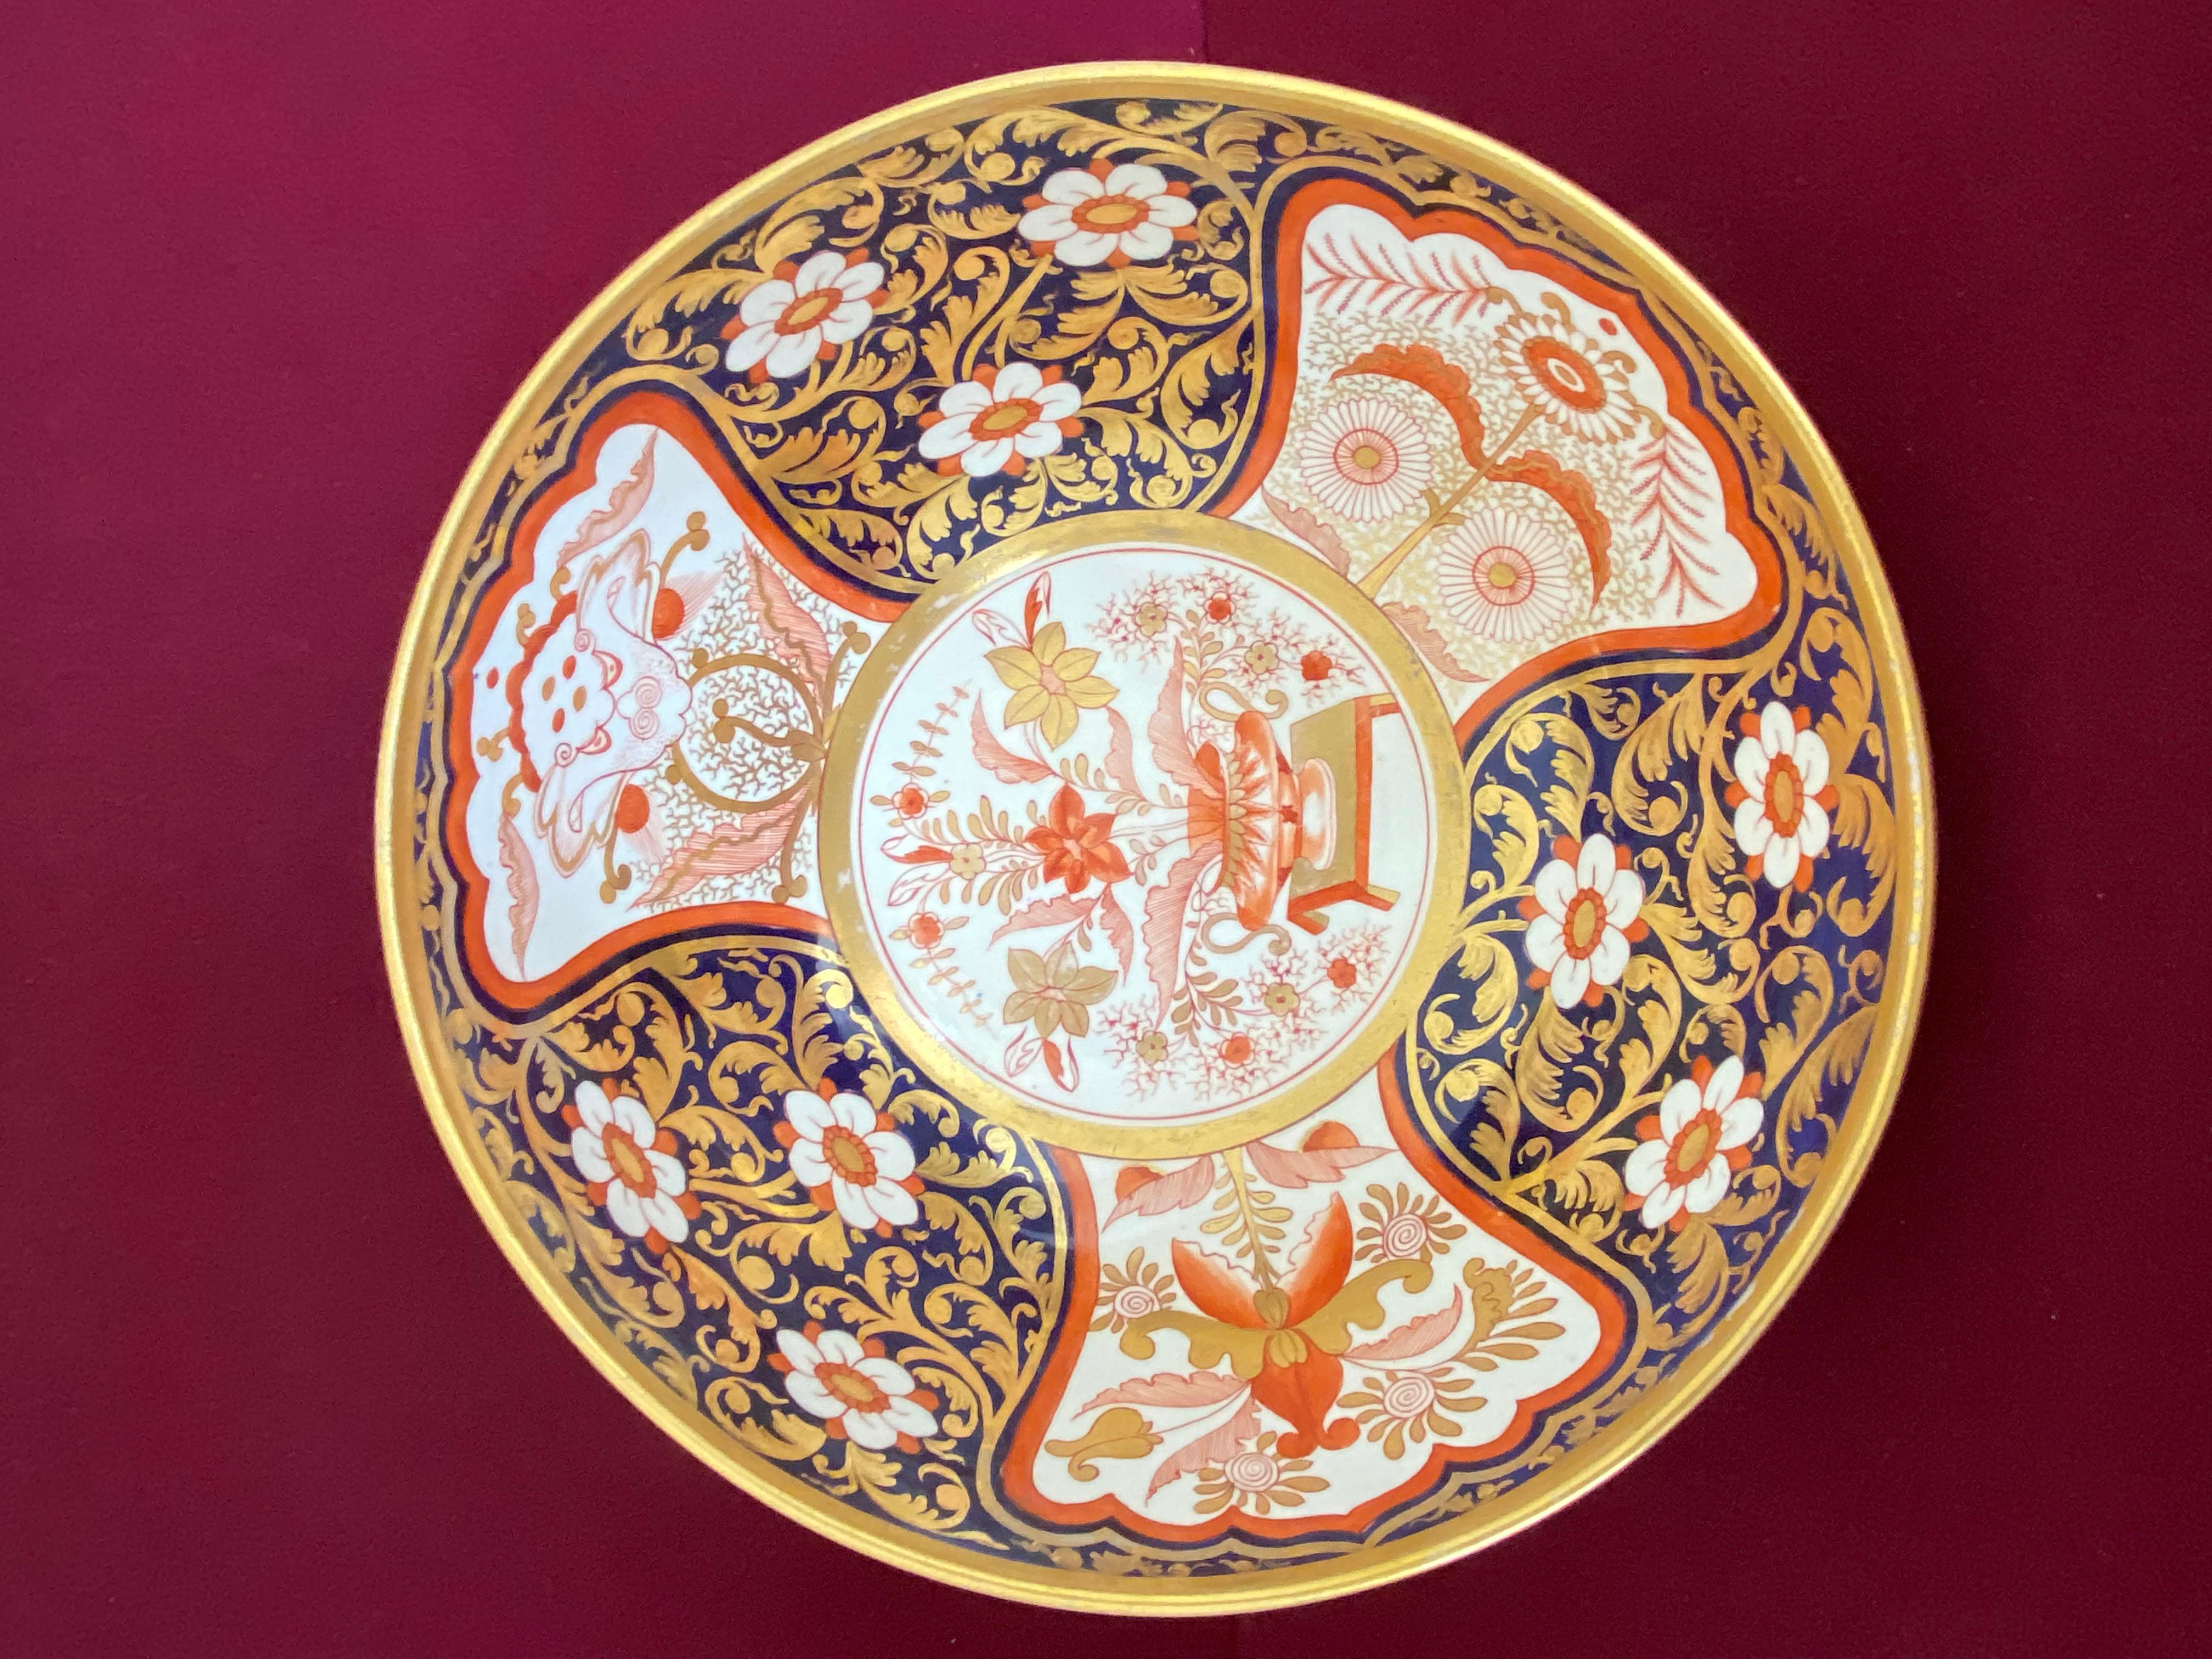 Eine sehr schöne Spode-Porzellanschale, 1805-1810. Fein verziert und vergoldet in einem reichen Muster Nummer 944.

Zustand: Ausgezeichnet 